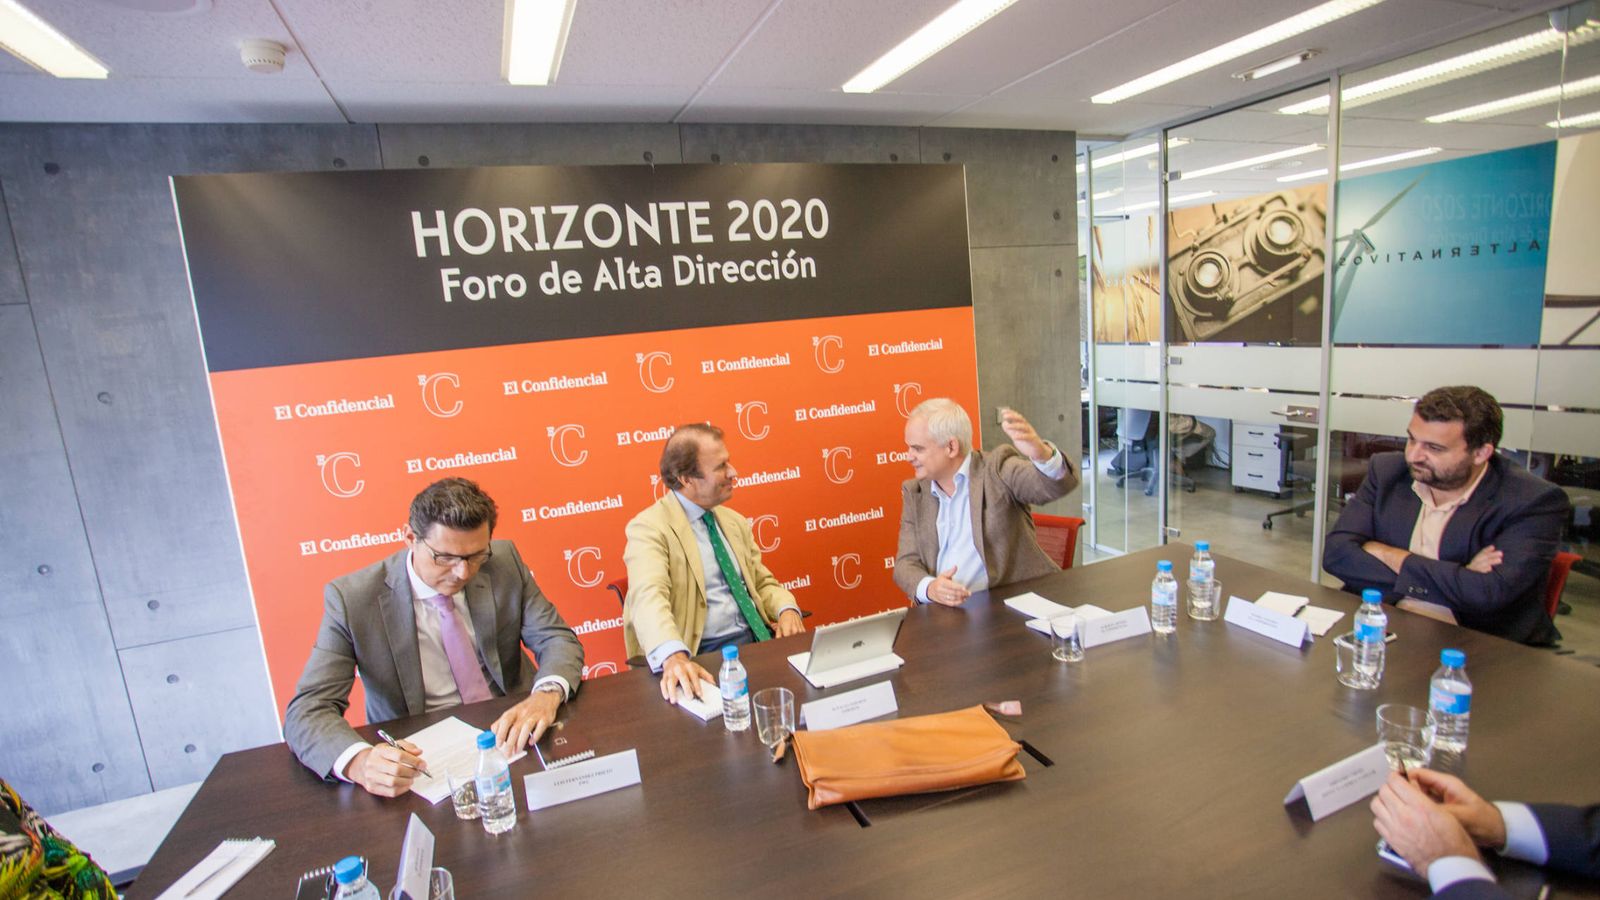 Foto: De izquierda a derecha: Luis Fernández, socio de PwC; Ignacio Osborne, CEO del Grupo Osborne; Alberto Artero, director general de El Confidencial, y Daniel Toledo, responsable de Economía y Empresas en El Confidencial.